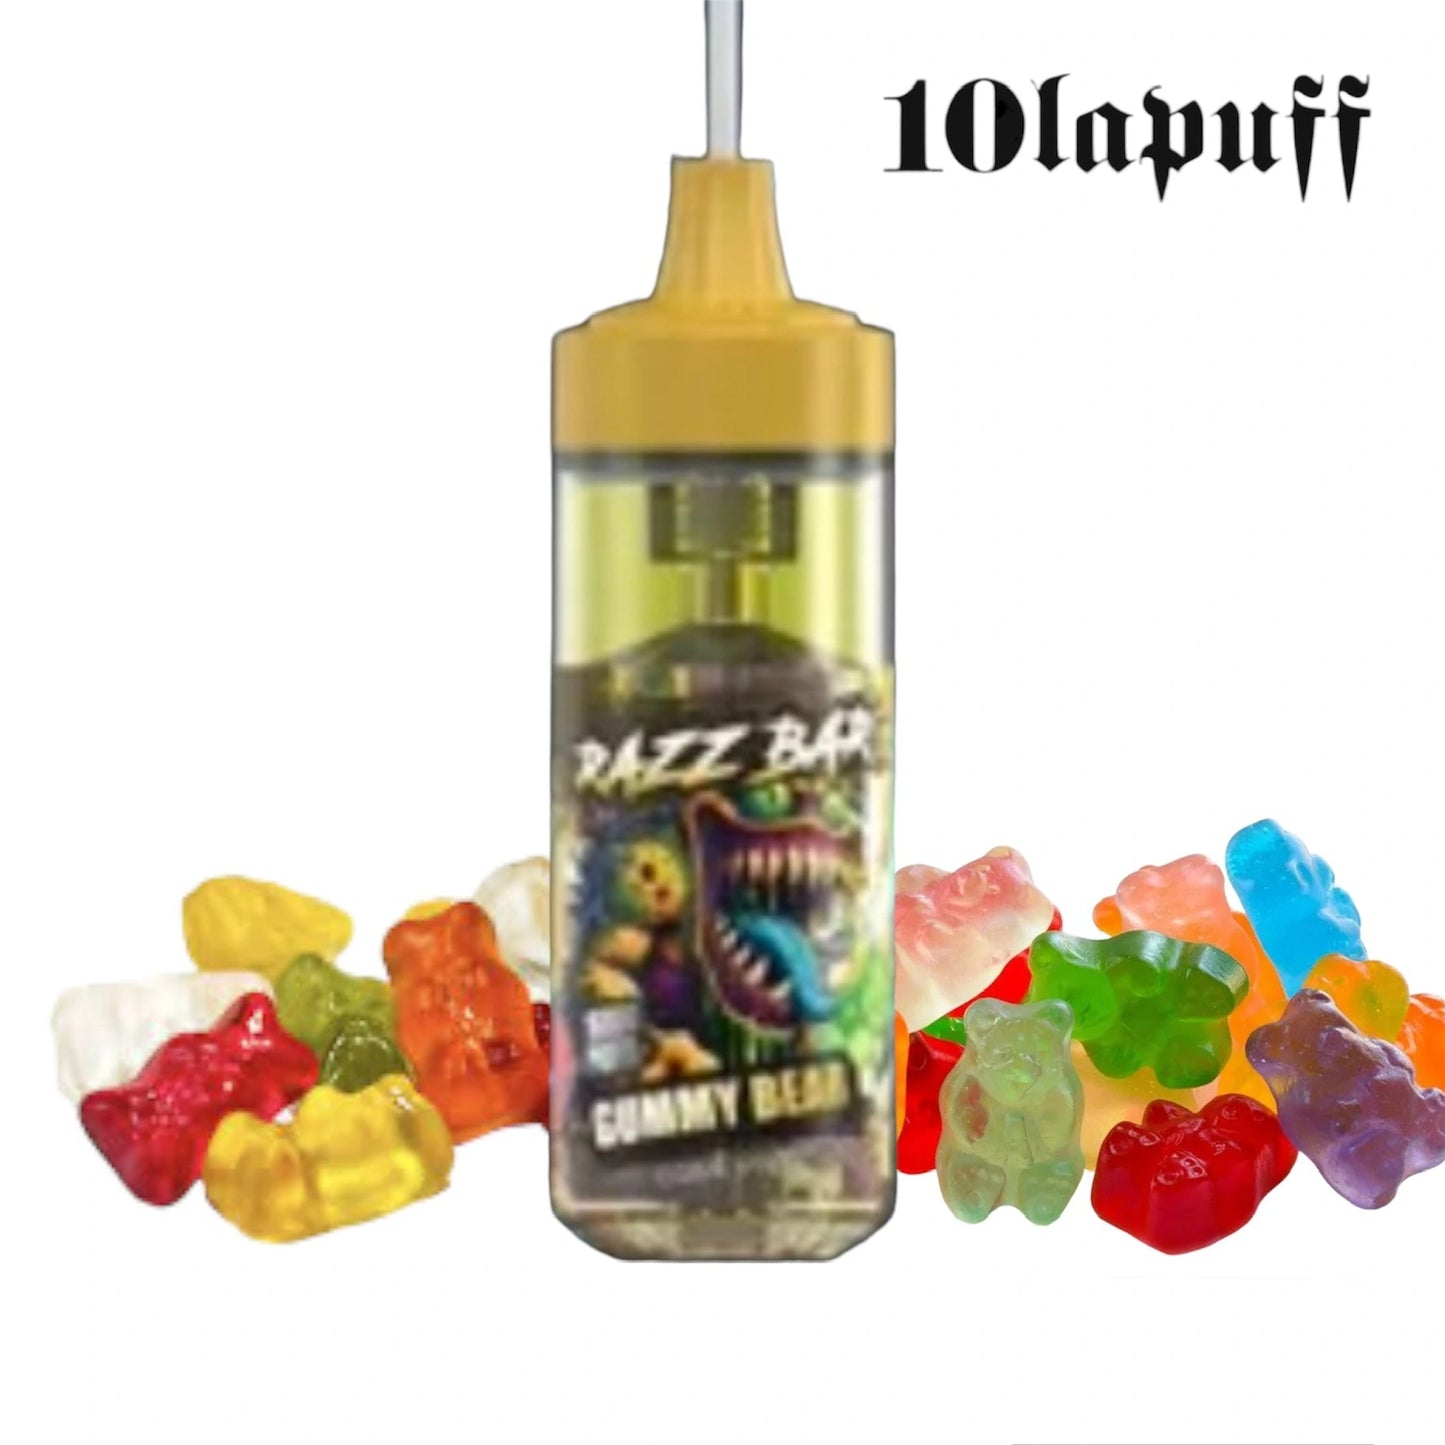 PUFF 16000 RAZZBAR - Gummies Bear